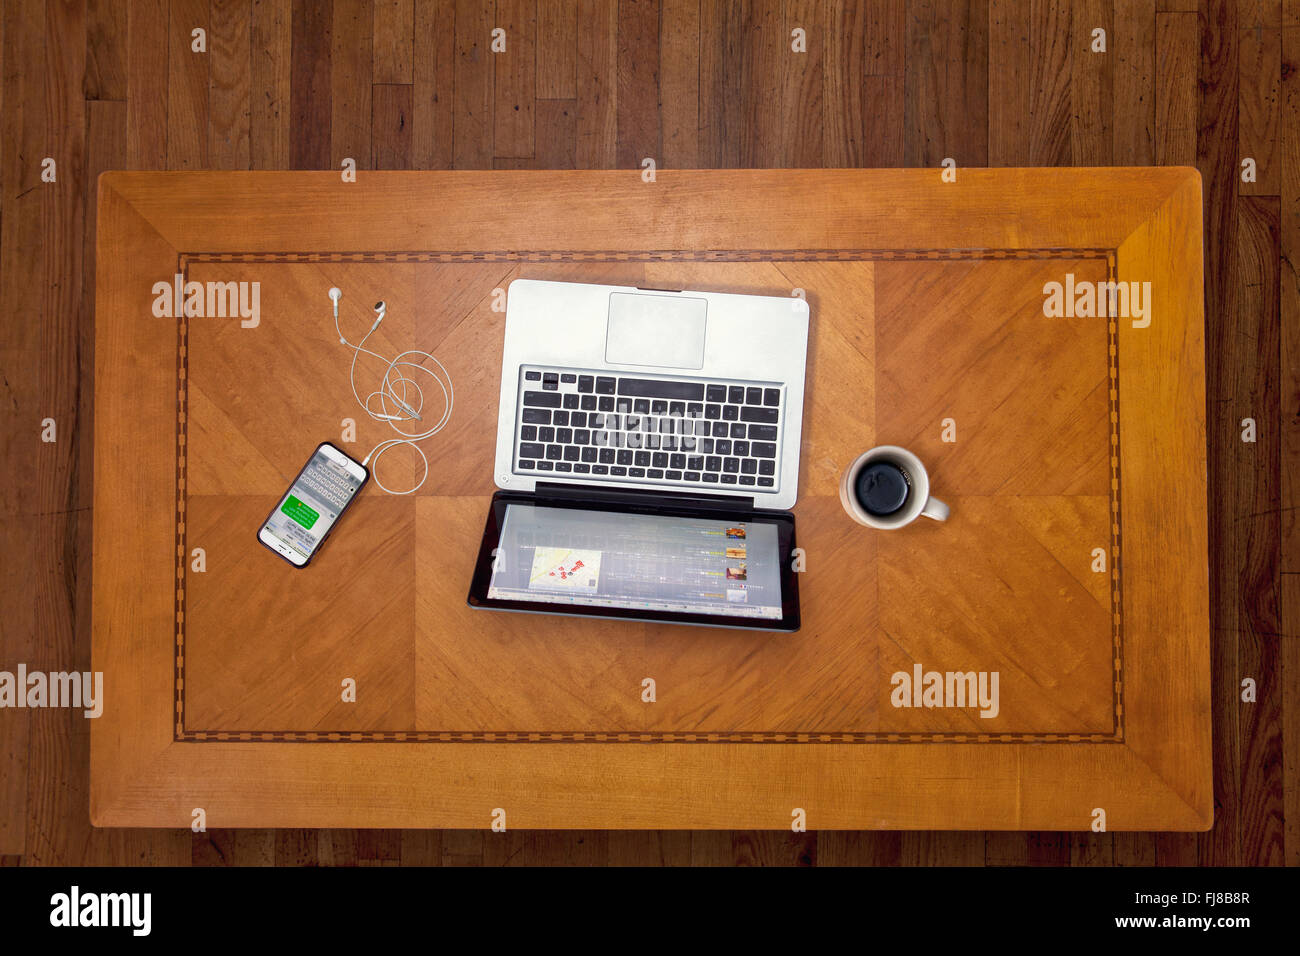 Mirando hacia abajo sobre una mesa art deco con un ordenador portátil, iphone y la taza de café. Foto de stock